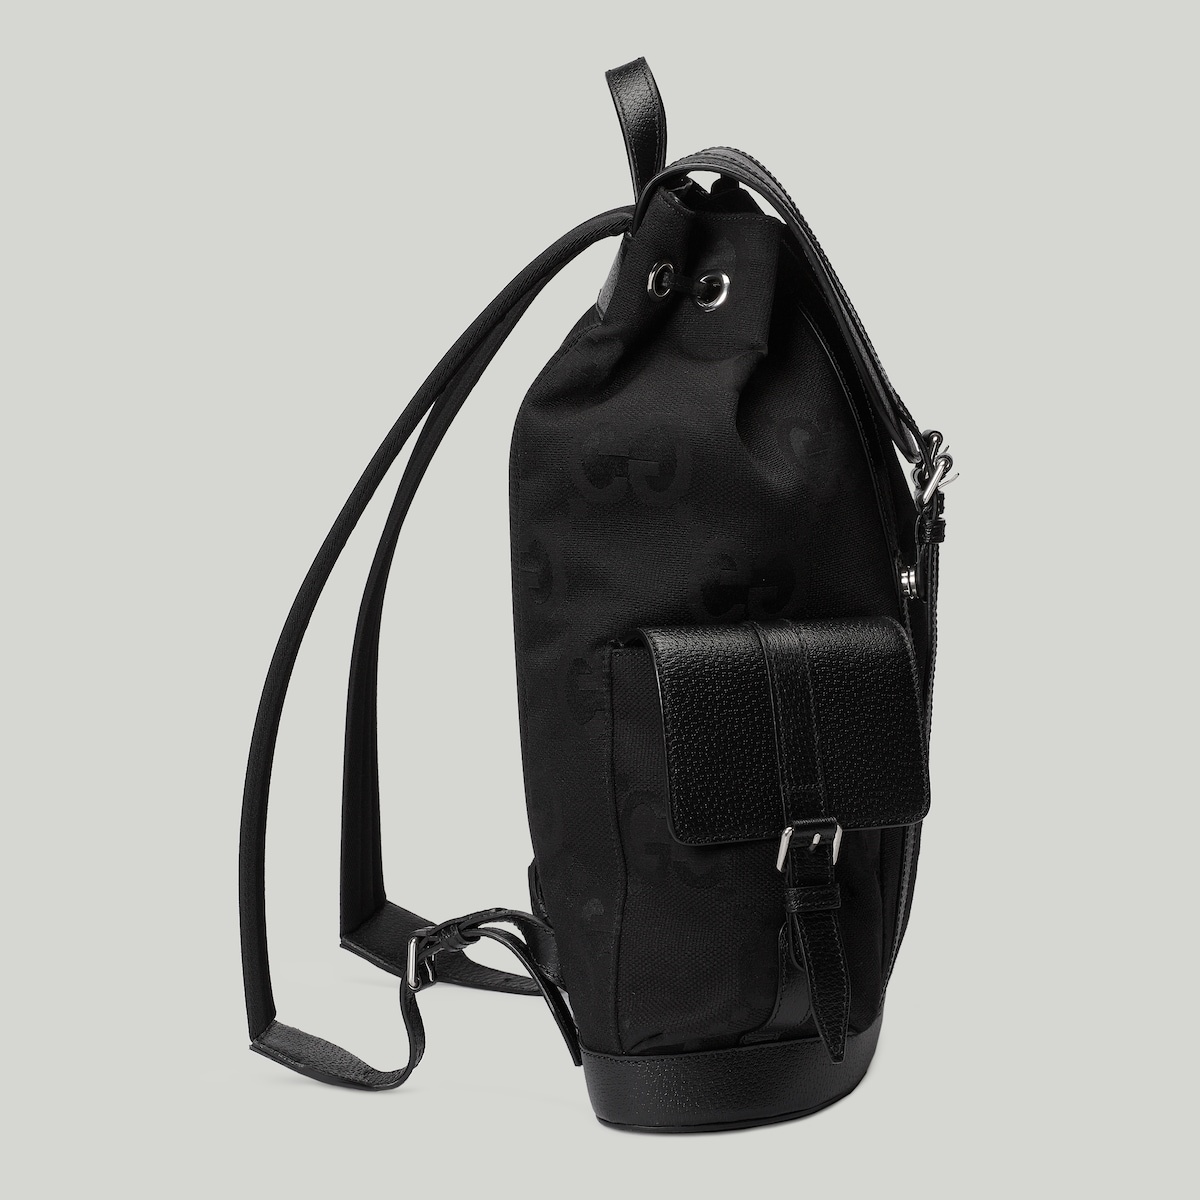 Jumbo GG backpack - 6